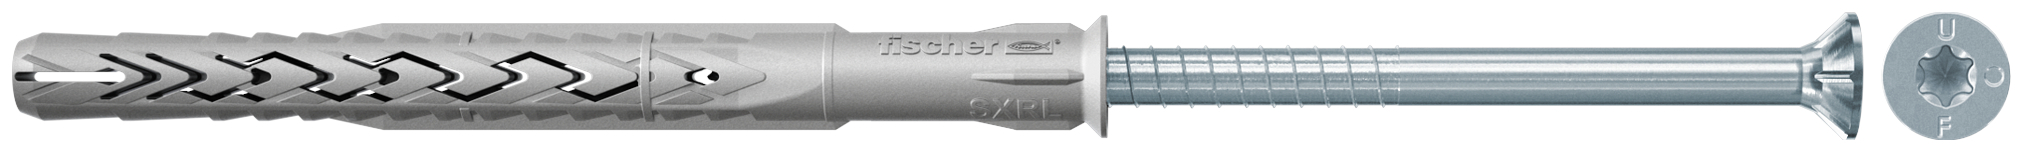 fischer Tasselli prolungati SXRL 8x60 T (1 Pz.) Tassello prolungato in nylon con marcatura CE con vite premontata T.S.P. impronta torx.